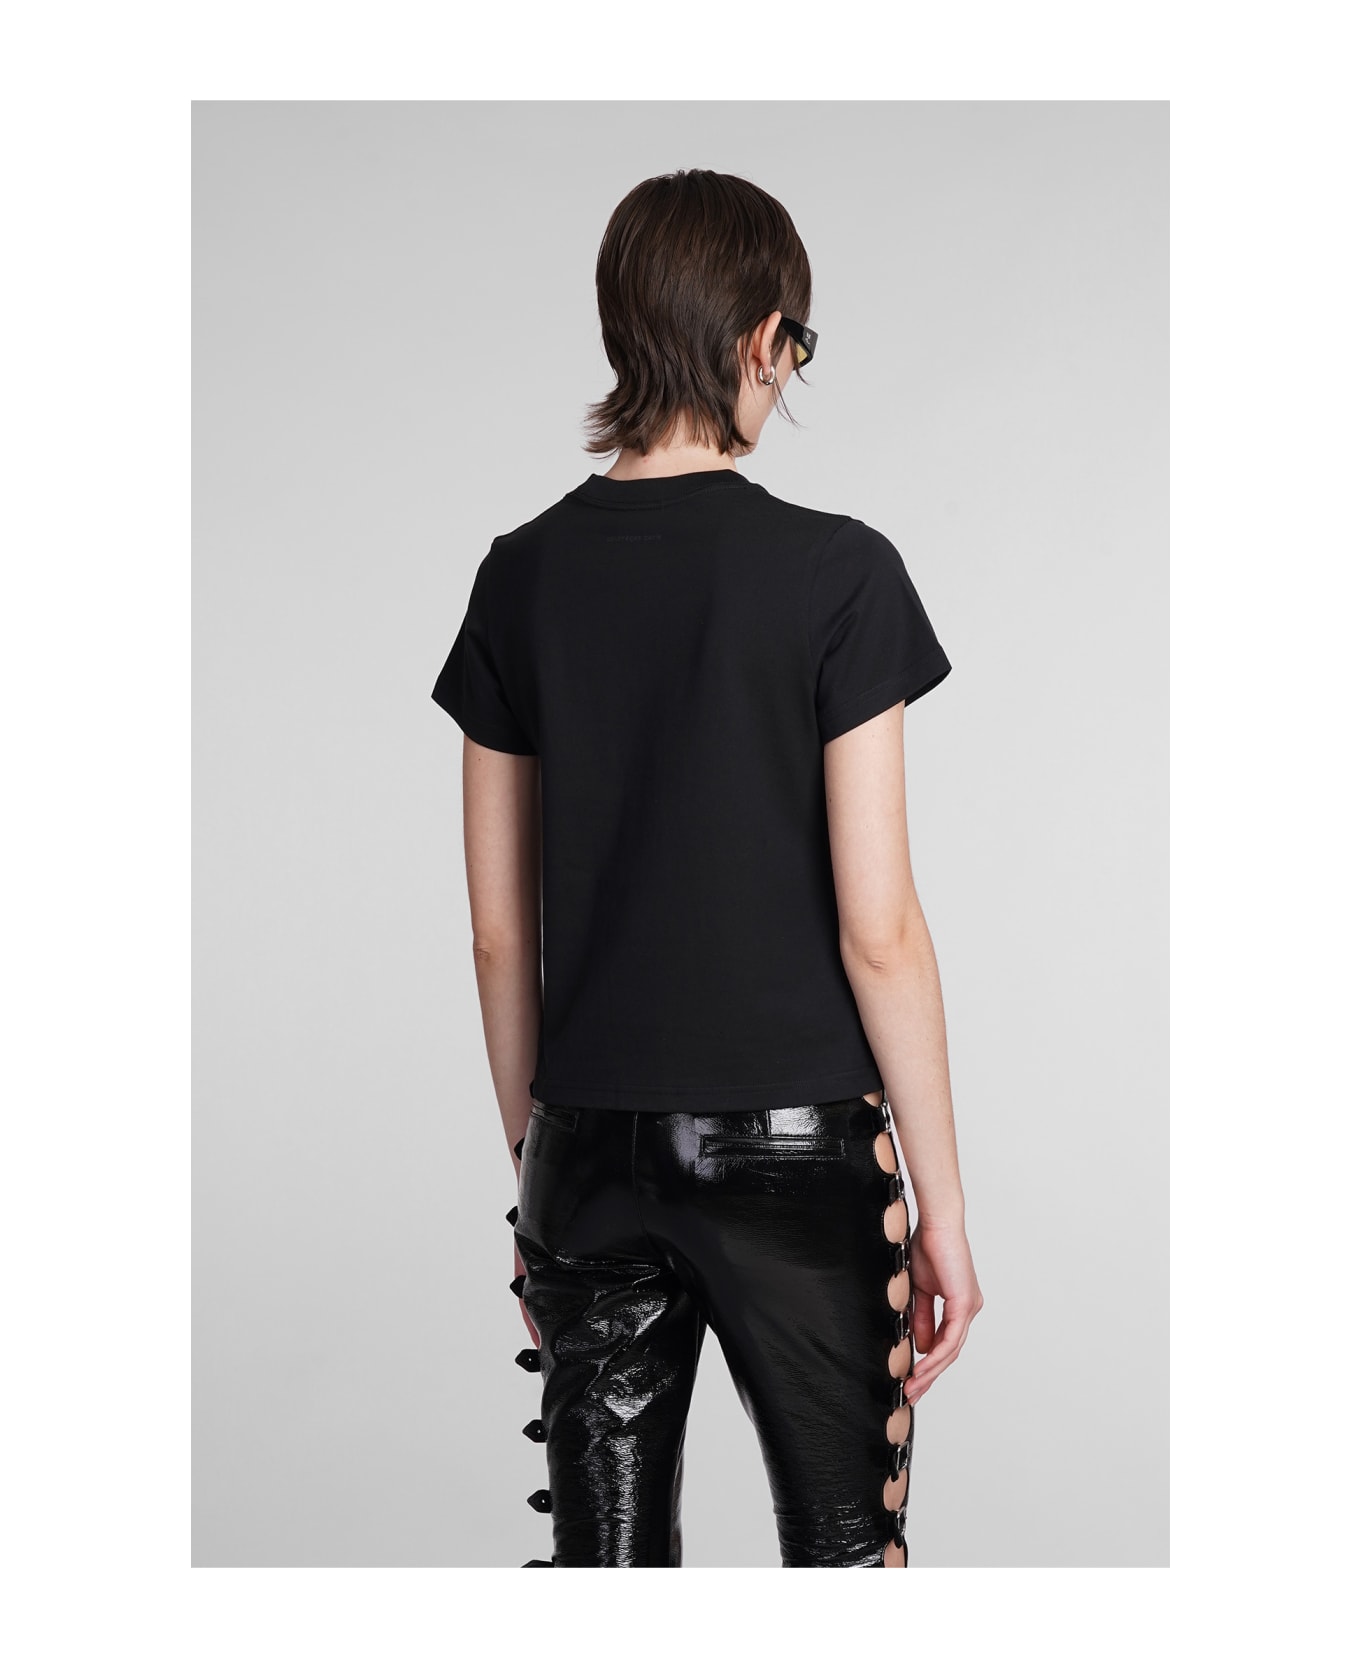 Courrèges T-shirt In Black Cotton - black Tシャツ